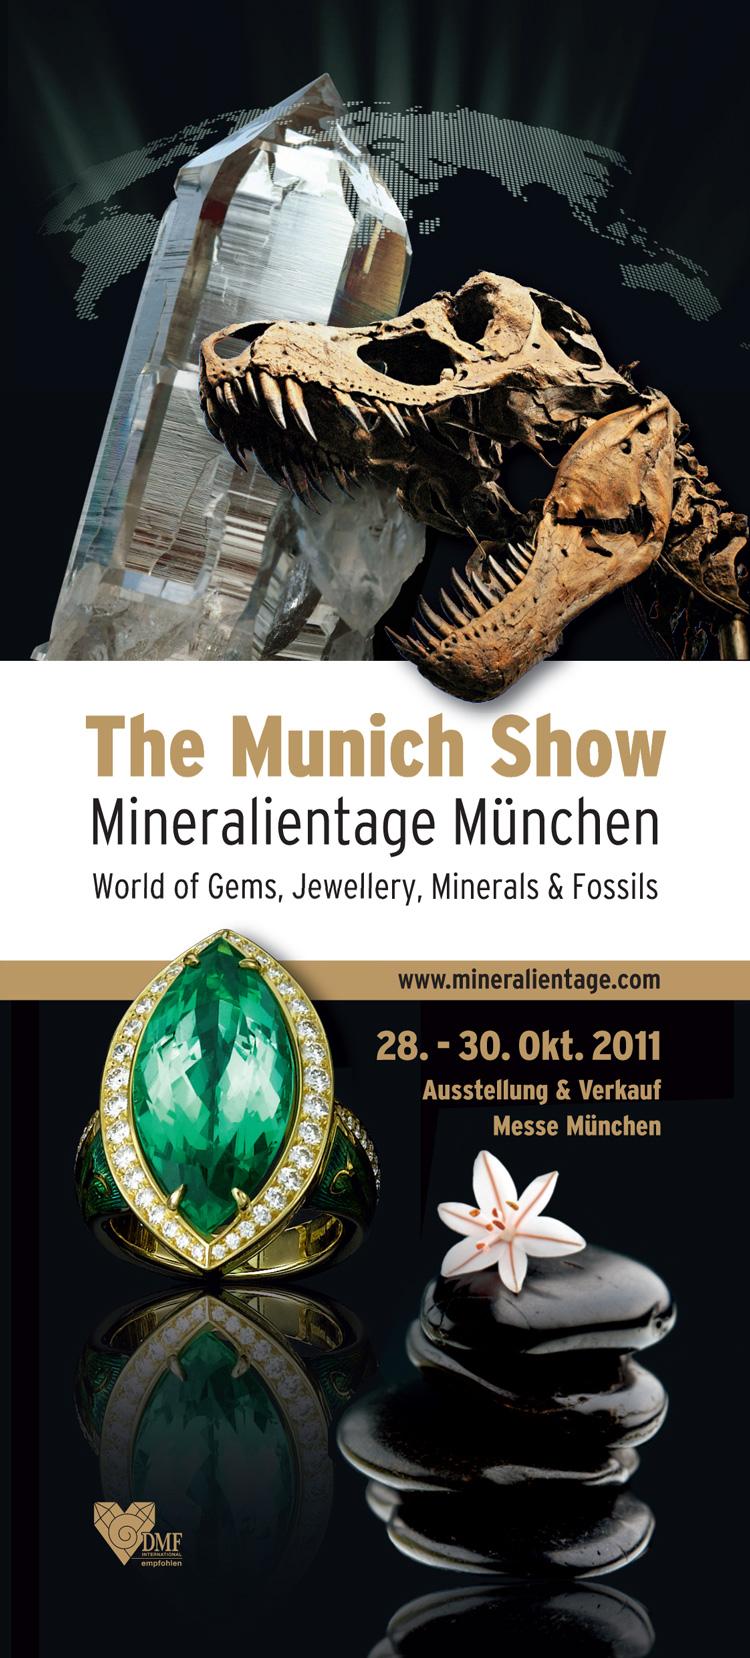 Mineralientage Munich 2011.jpg